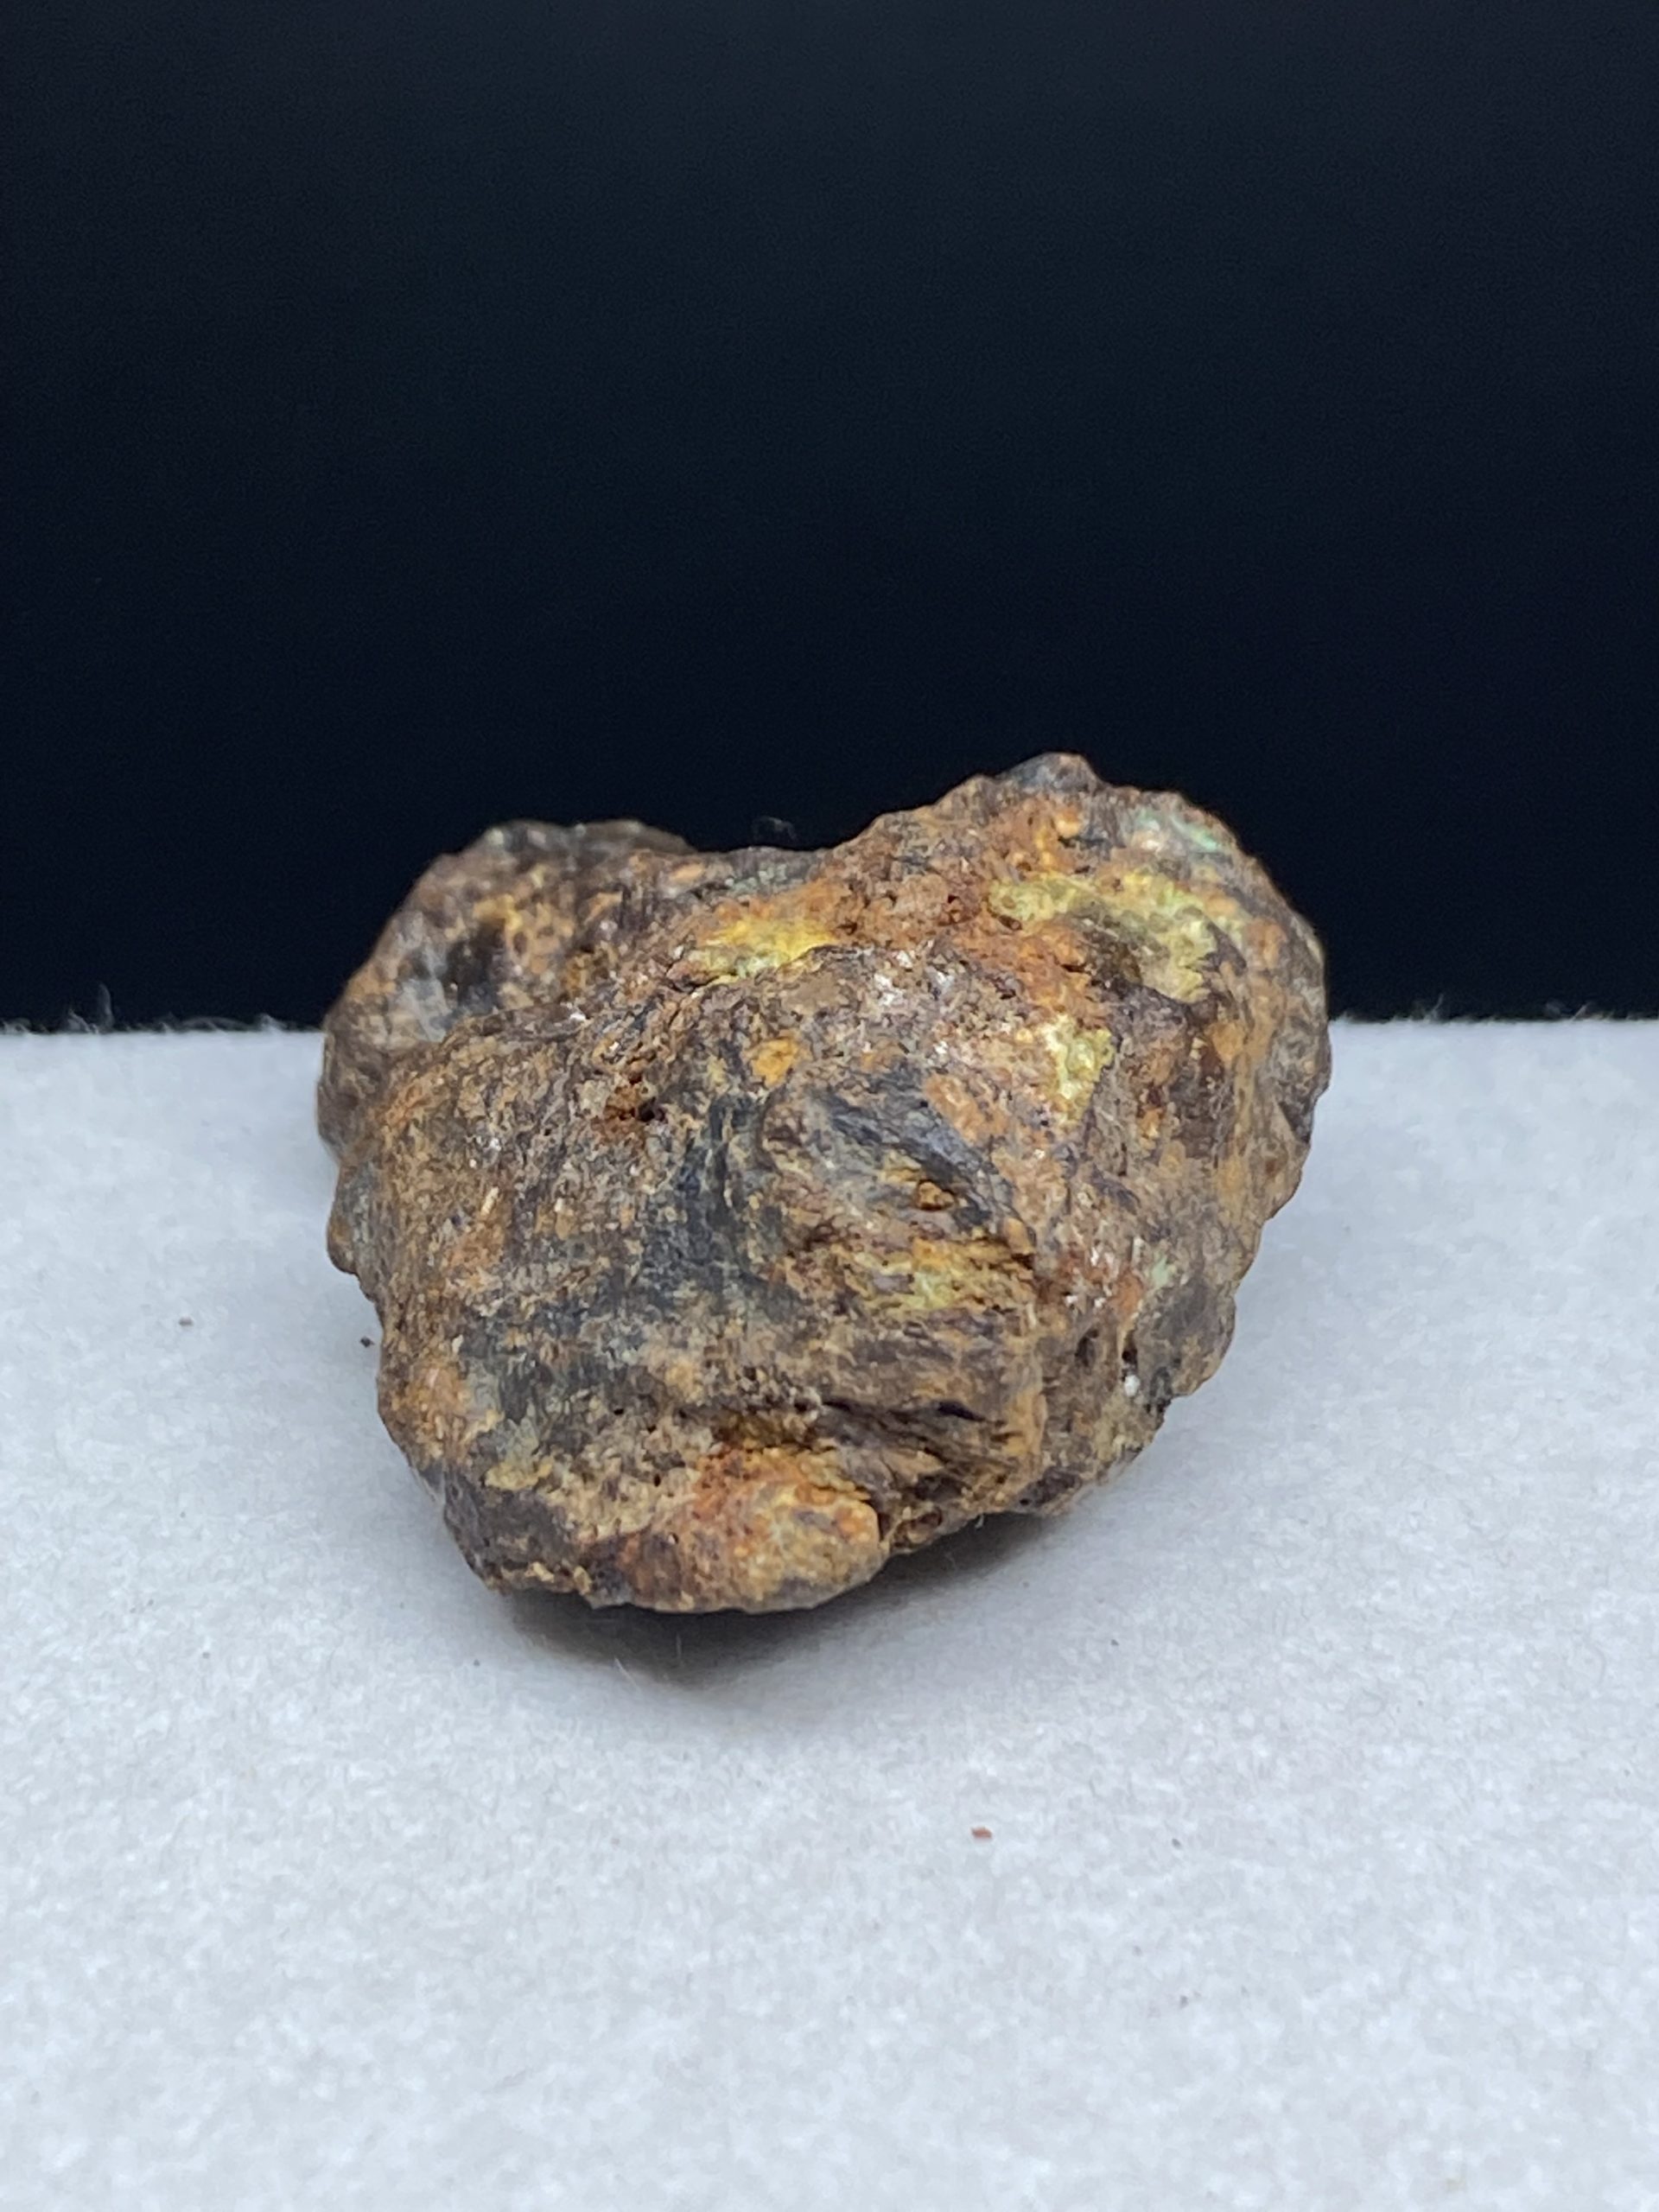 セリコ隕石 サイコロver - 科学、自然